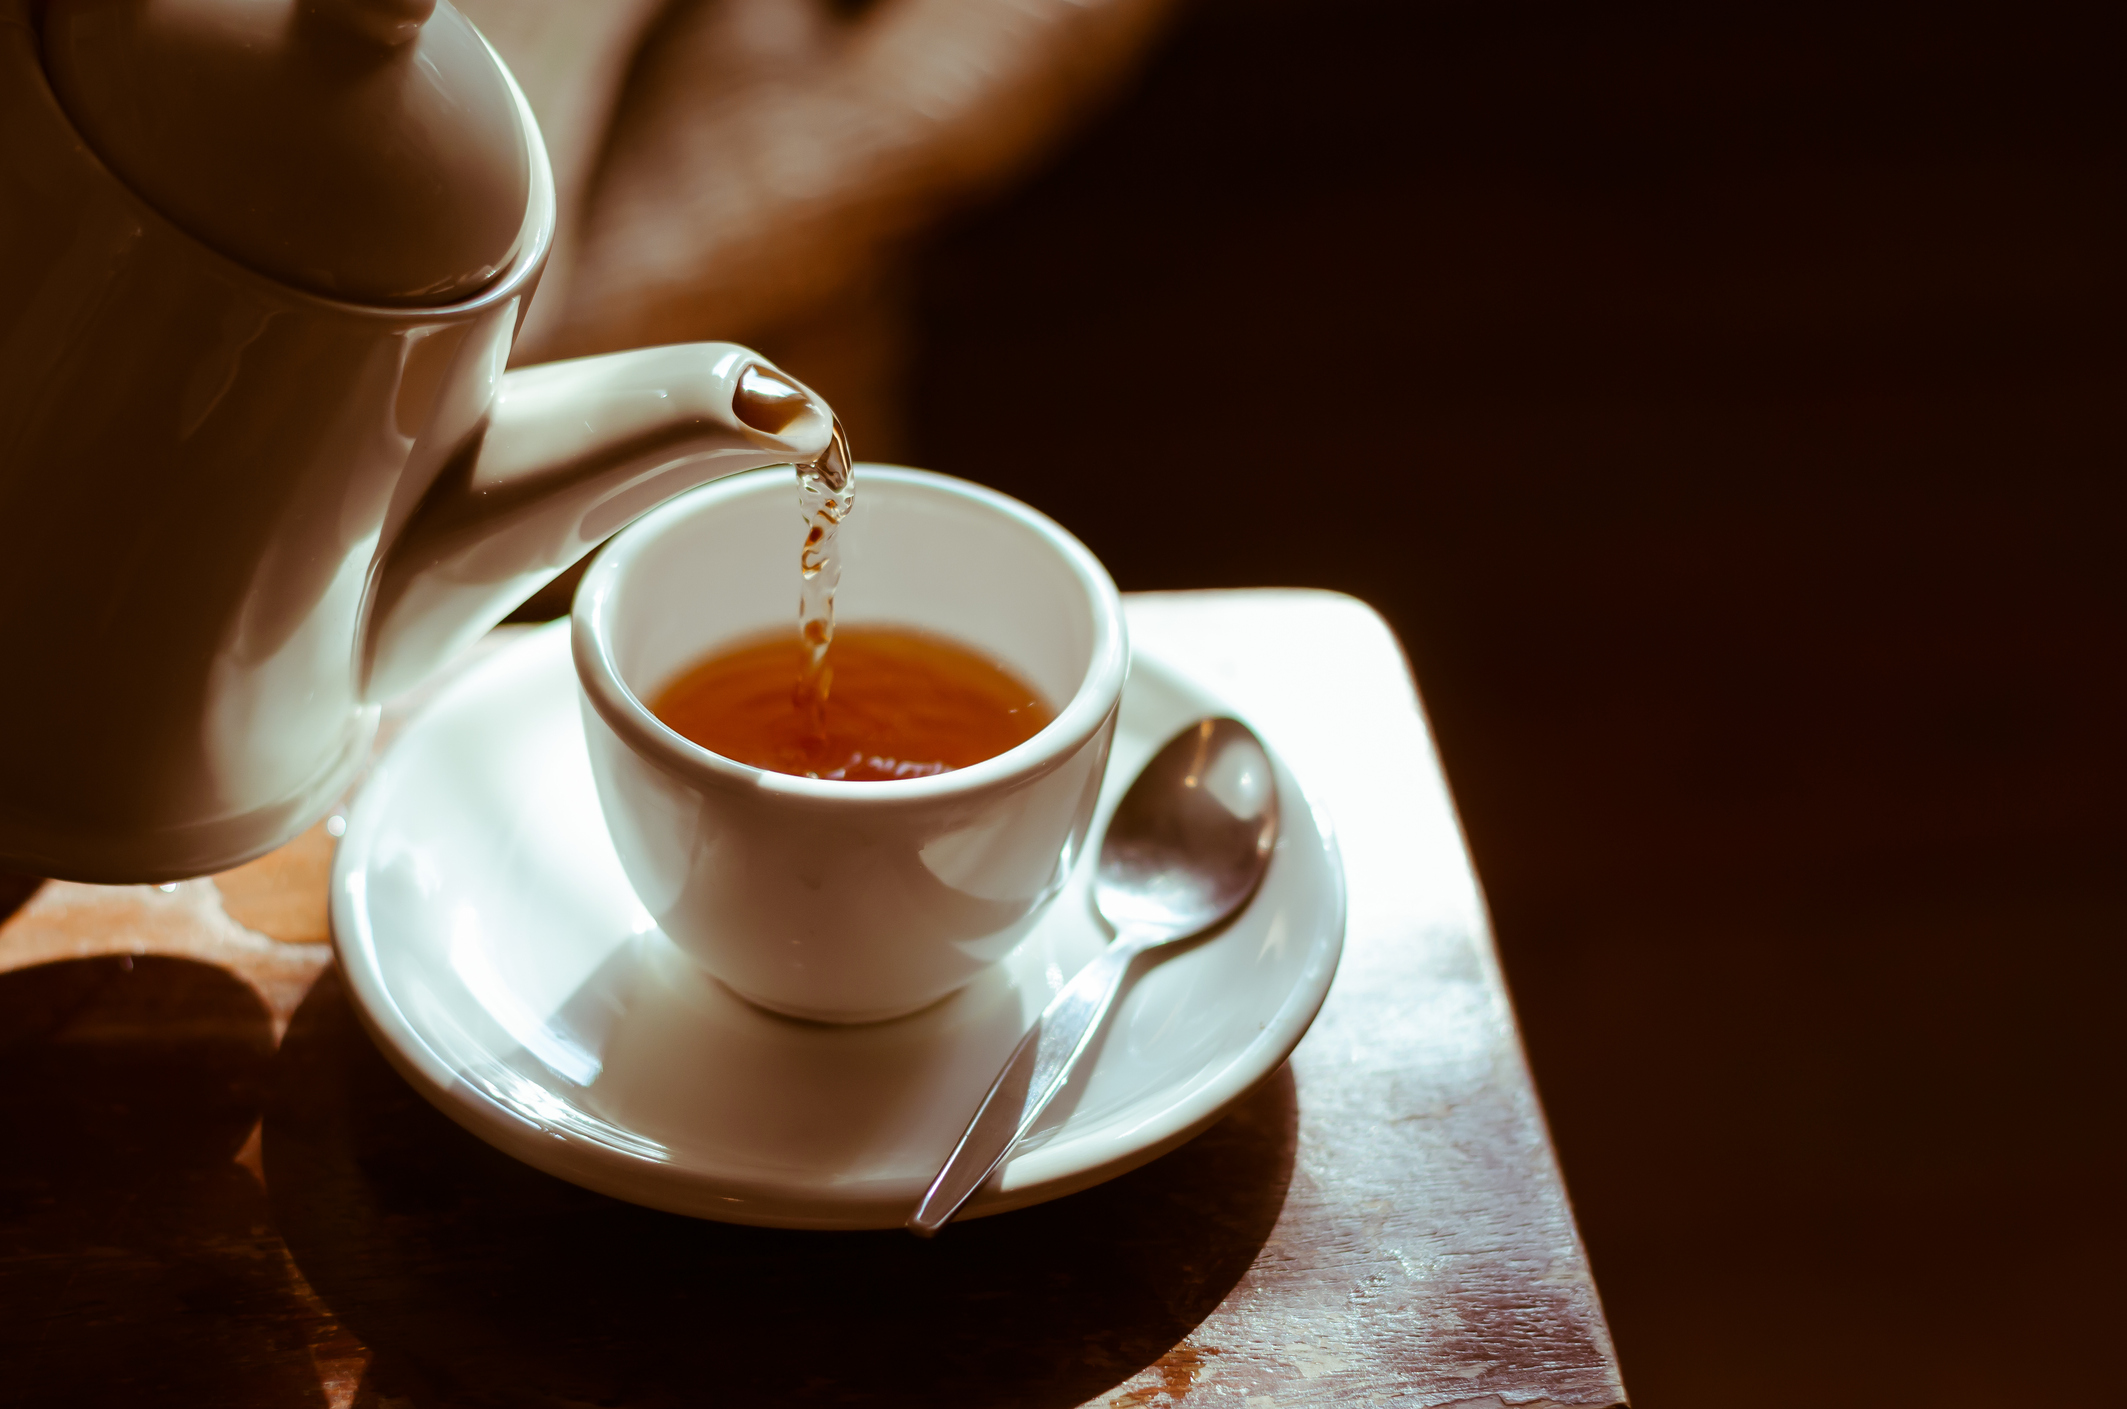 Des scientifiques révèlent le sale secret d’une meilleure tasse de thé